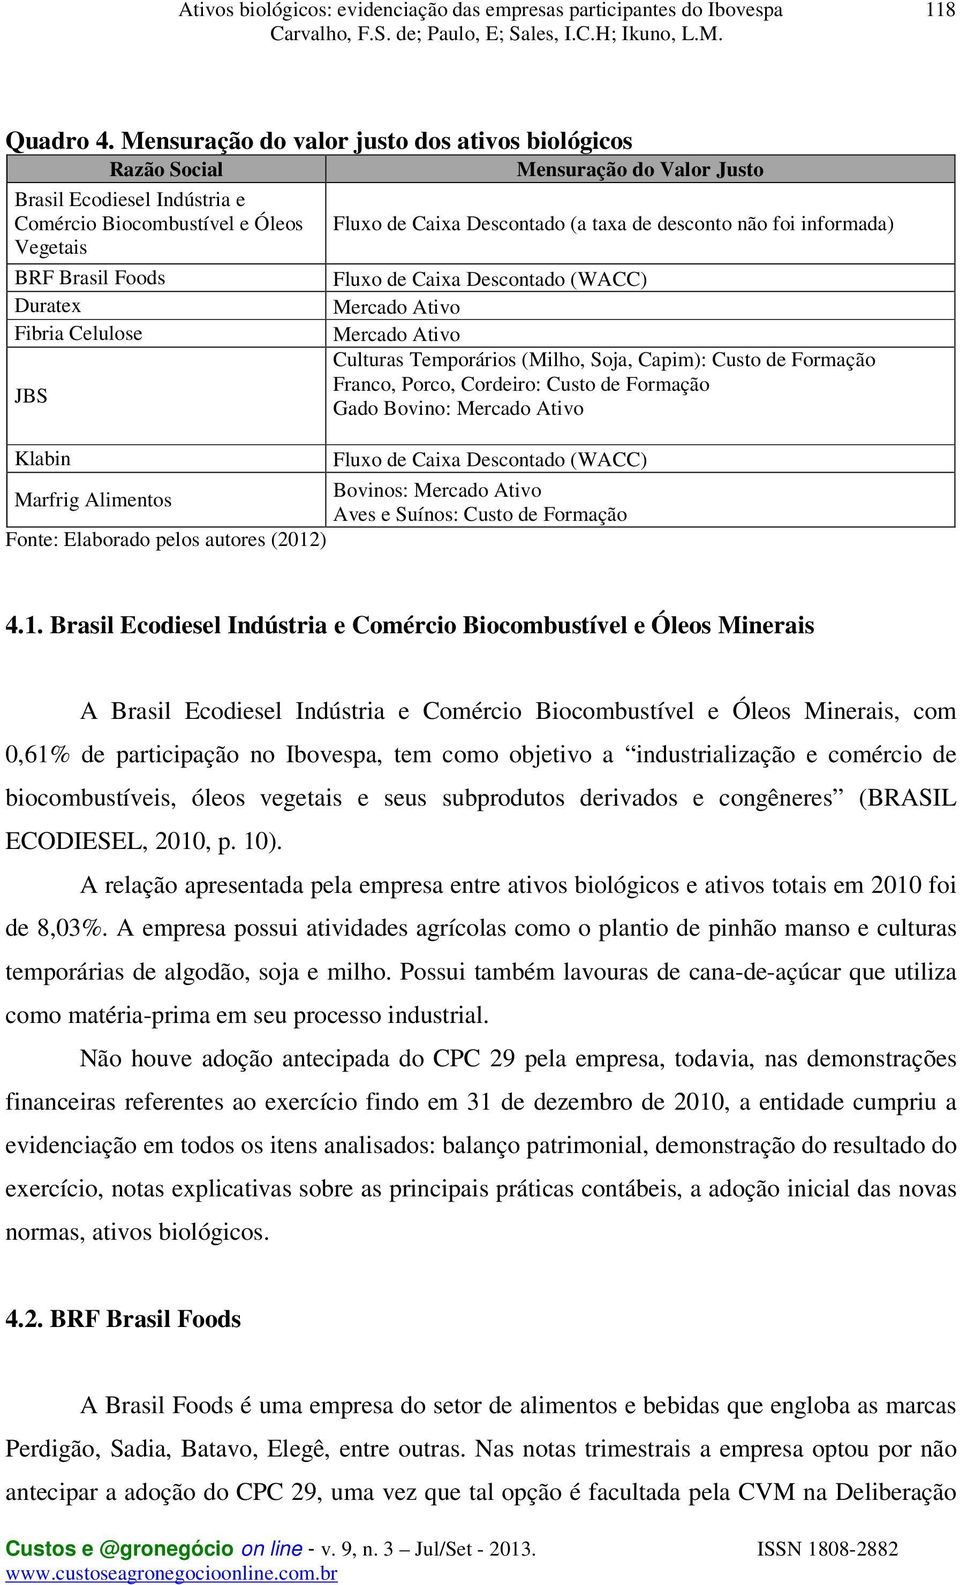 foi informada) Vegetais BRF Brasil Foods Duratex Fibria Celulose JBS Klabin Marfrig Alimentos Fonte: Elaborado pelos autores (2012) Fluxo de Caixa Descontado (WACC) Mercado Ativo Mercado Ativo